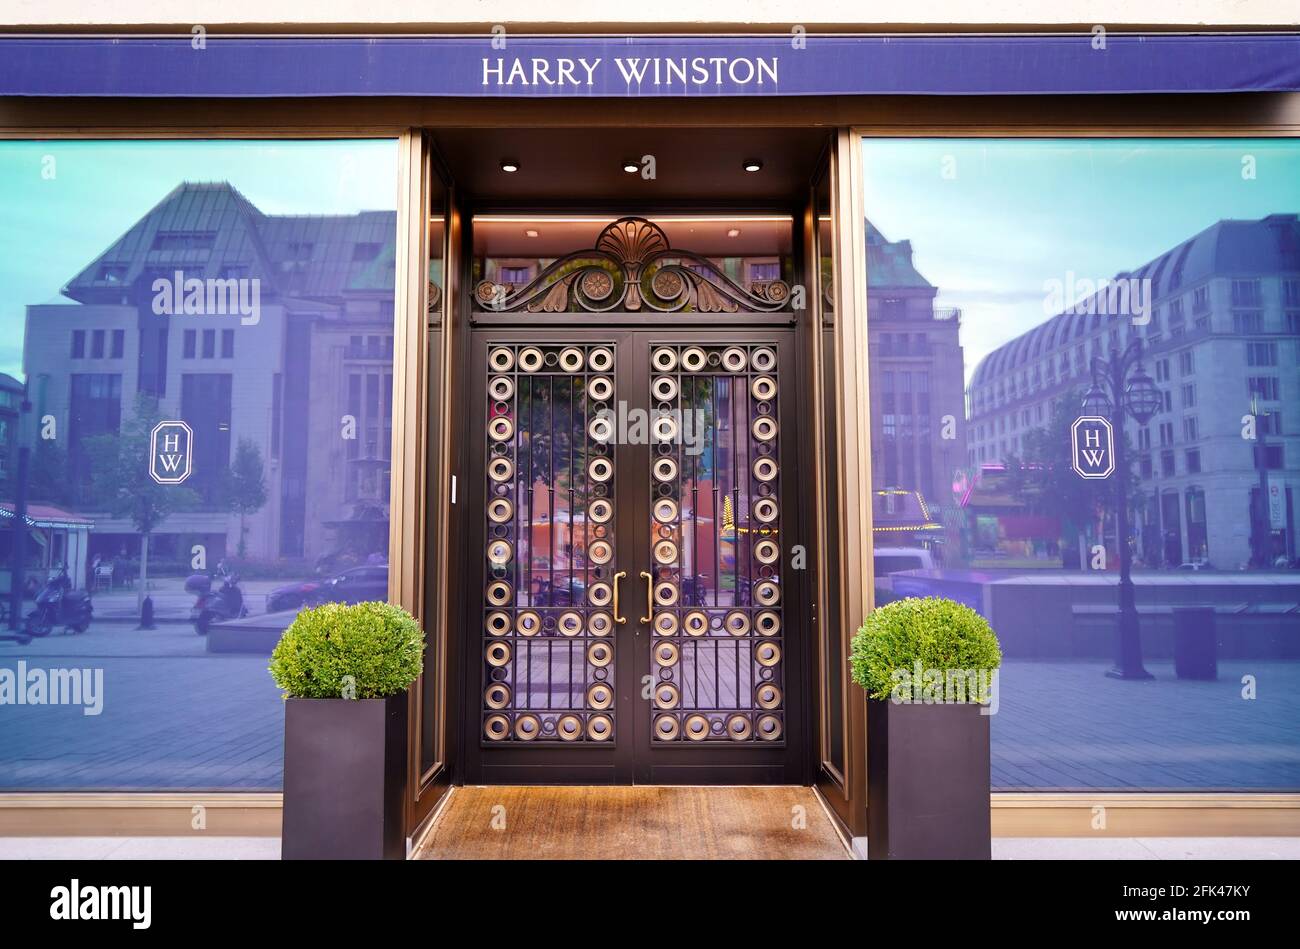 Vista frontal de la joyería American Harry Winston en el centro de Düsseldorf. Harry Winston es una marca de lujo fundada en 1932 en Nueva York. Foto de stock